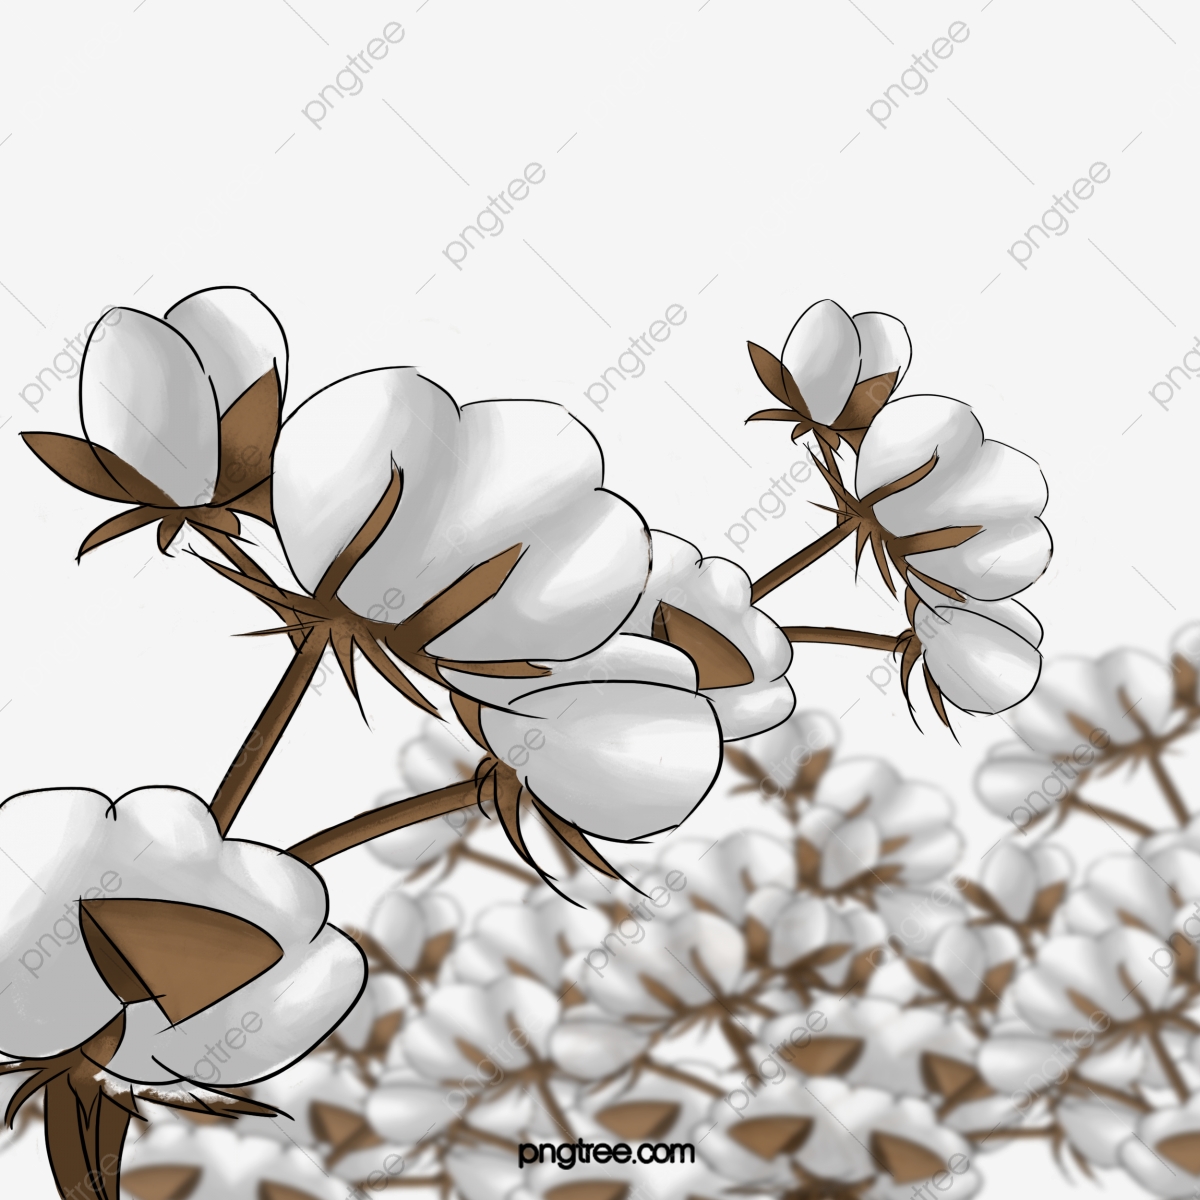 cotton clipart cotton plant